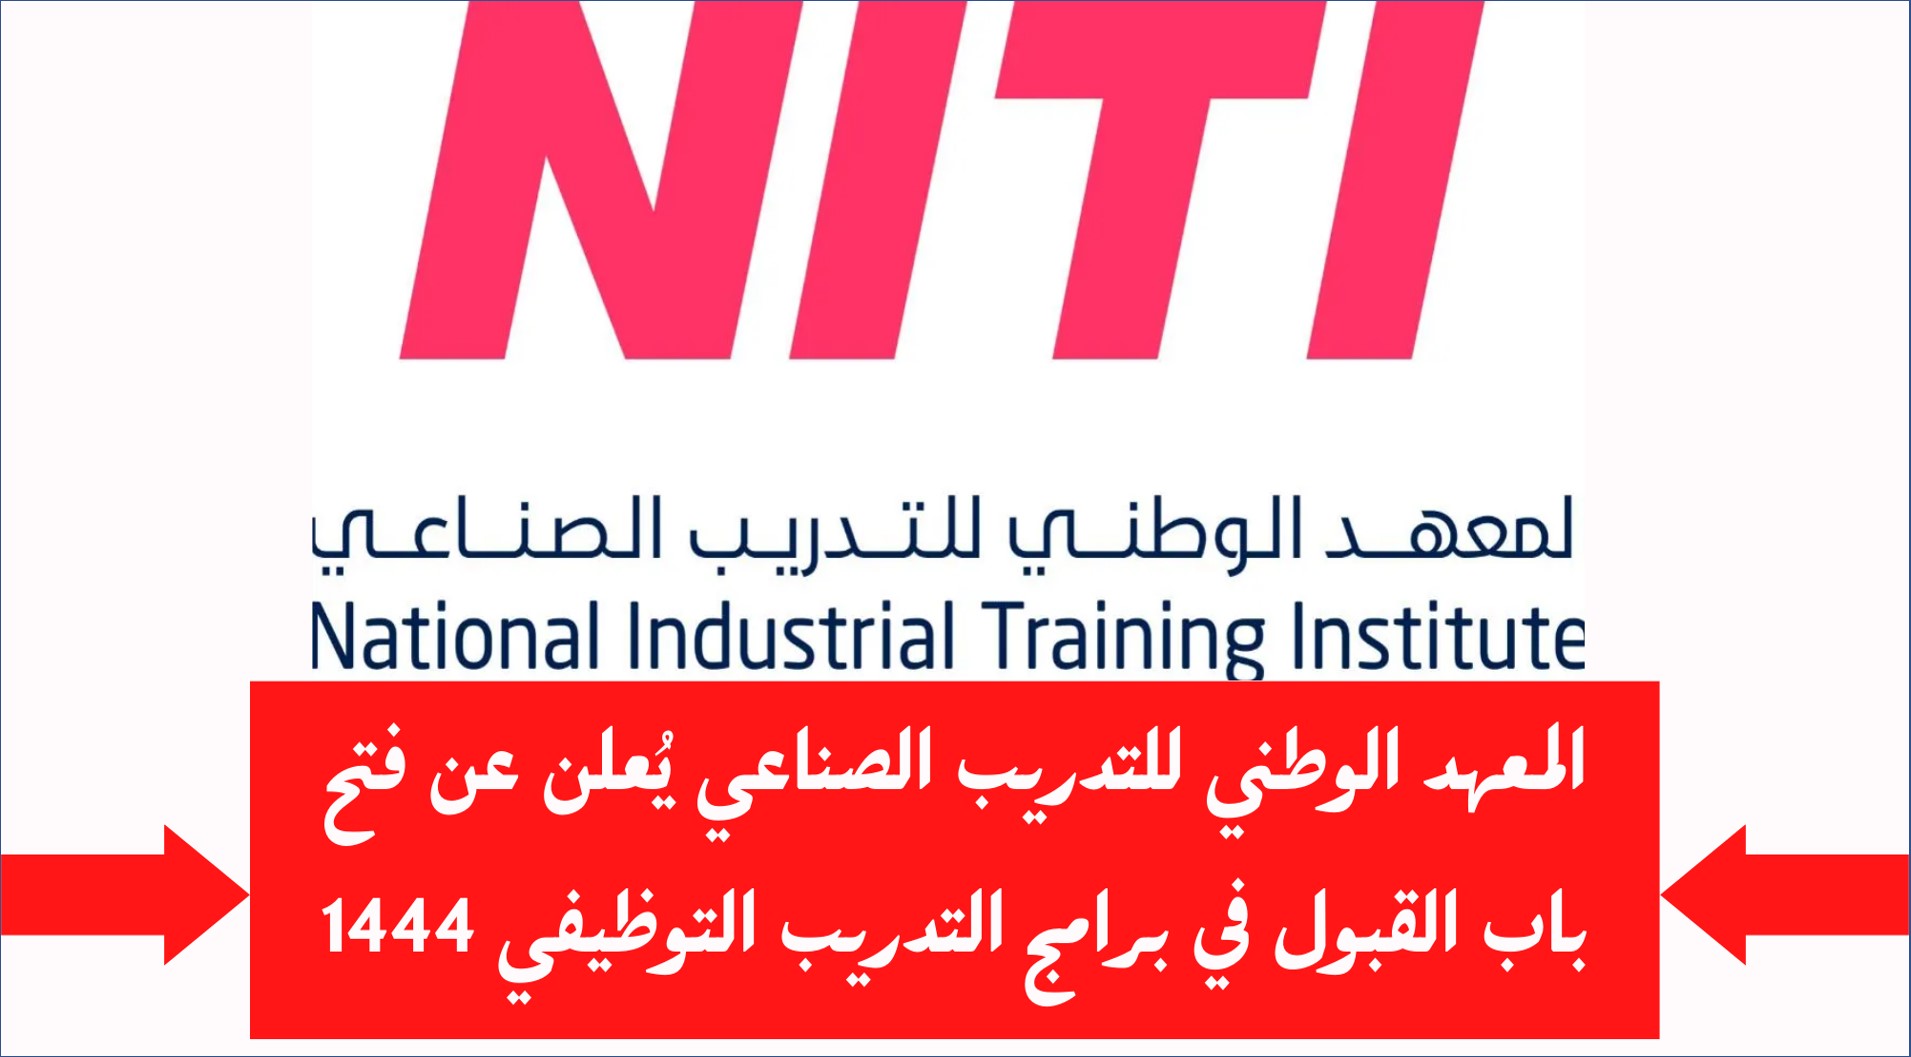 المعهد الوطني للتدريب الصناعي NITI يعلن عن برنامج التدريب والتوظيف